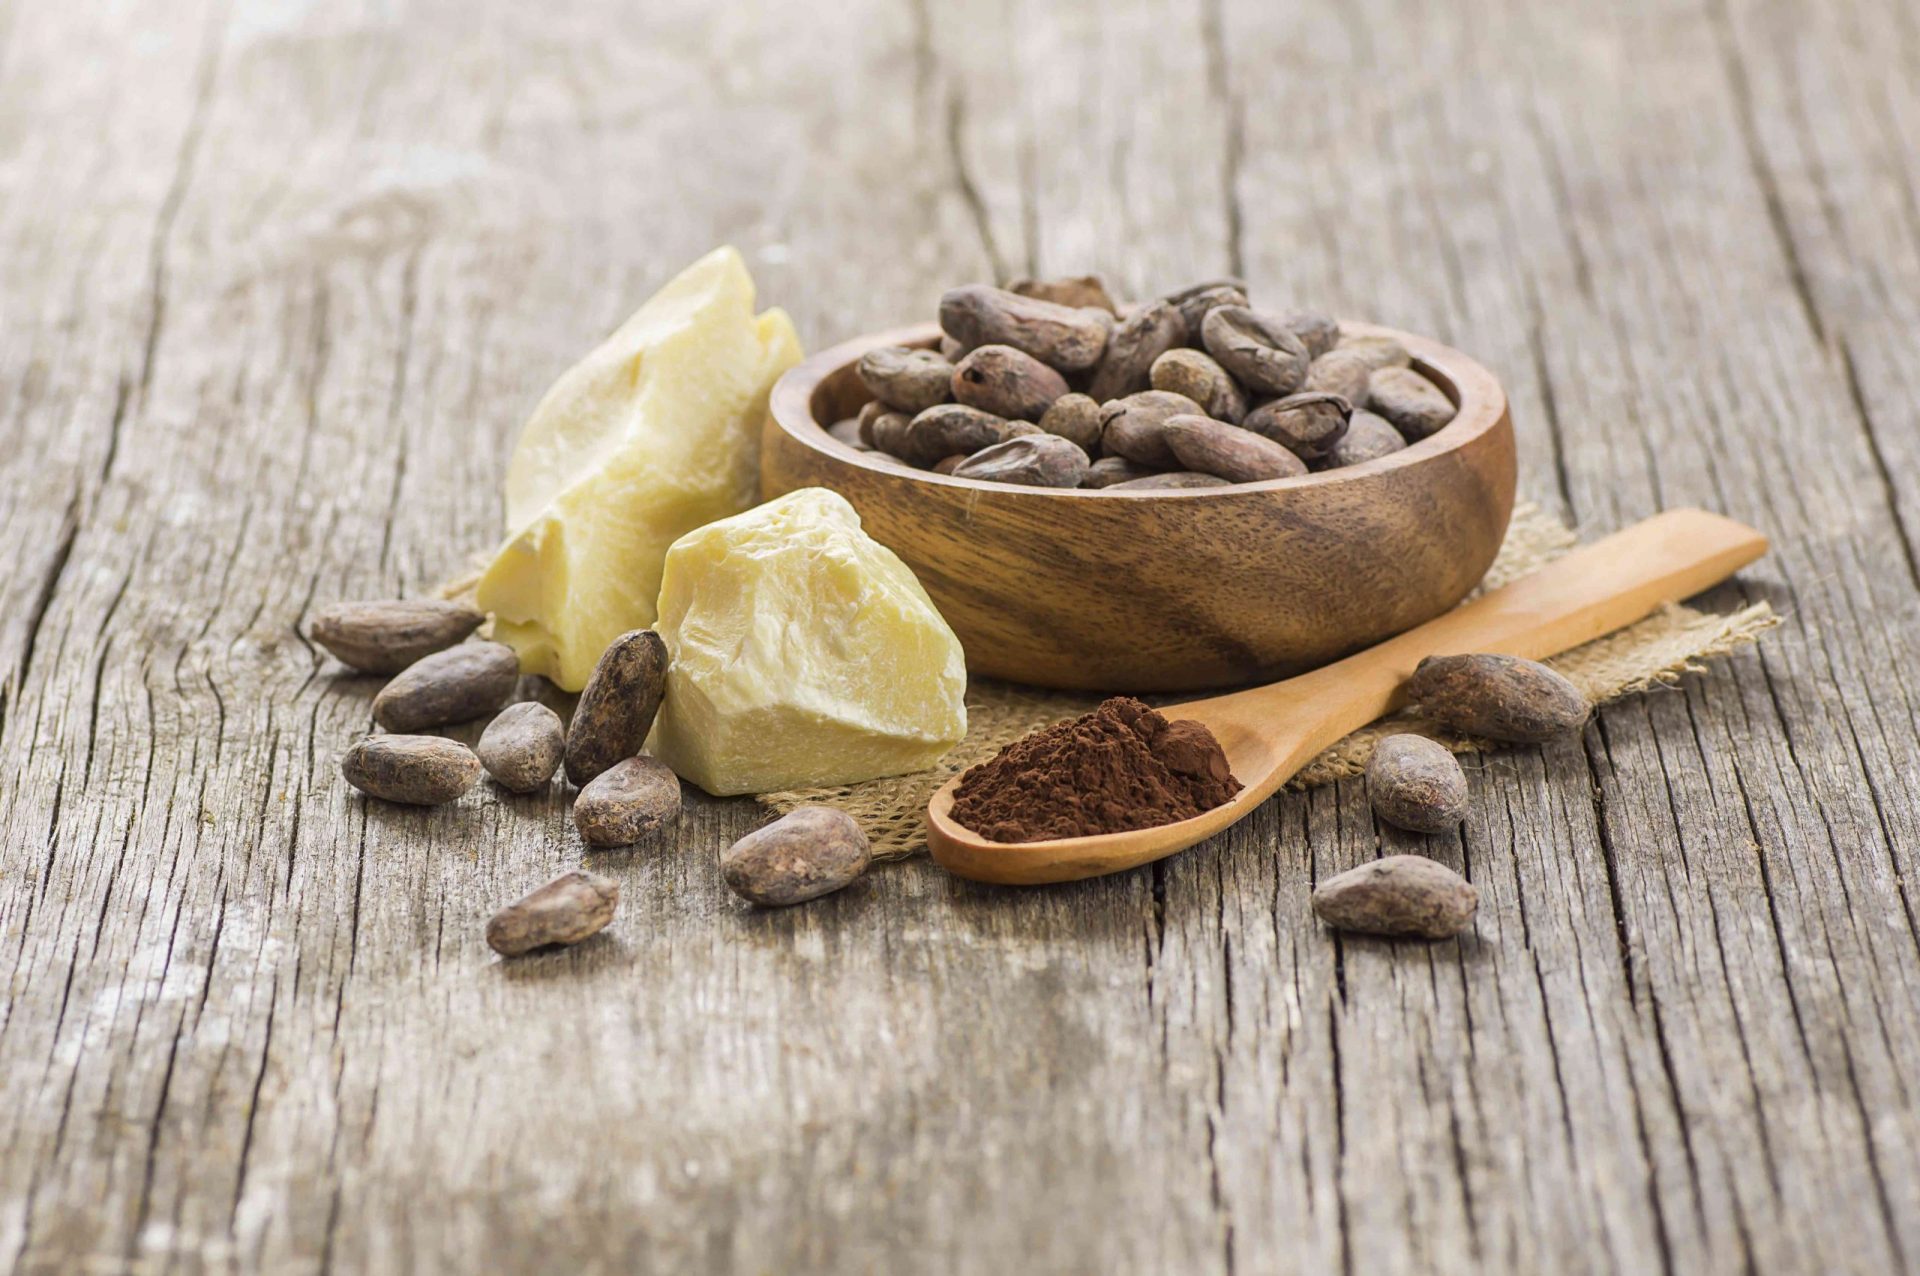 Manteca de cacao o aceite sólido de cacao con cacao en polvo en una cuchara y granos de cacao crudos en un cuenco de madera sobre un fondo rústico.